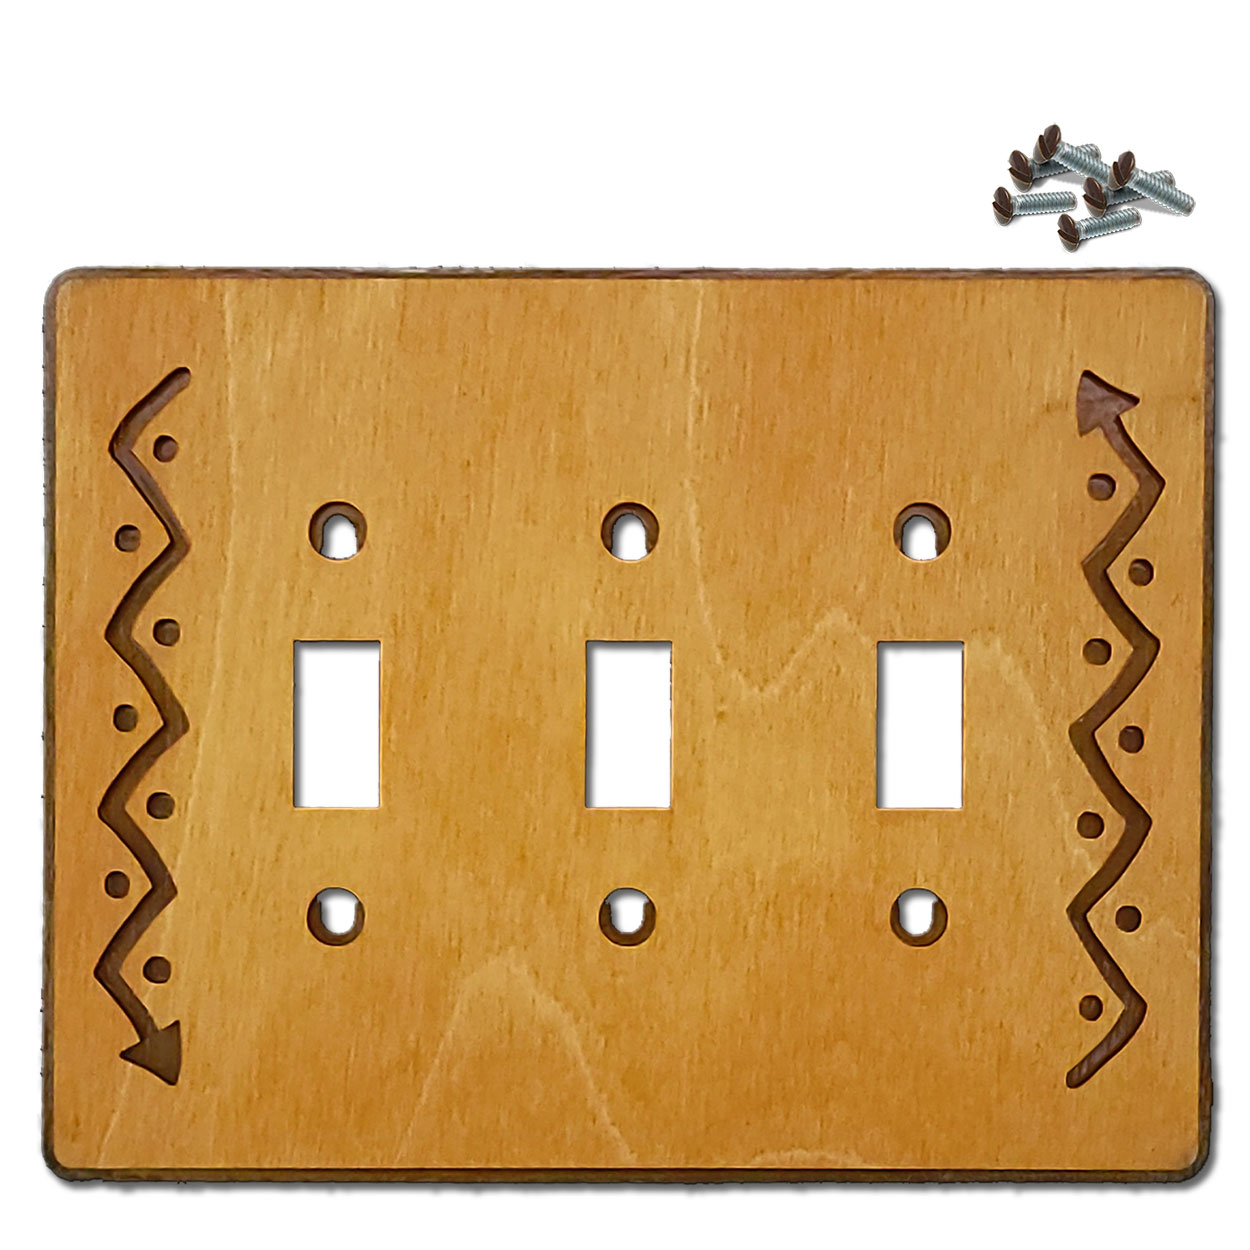 168523S -  Zig-Zag Arrow Southwestern Decor Triple Standard Switch Plate in Golden Sienna